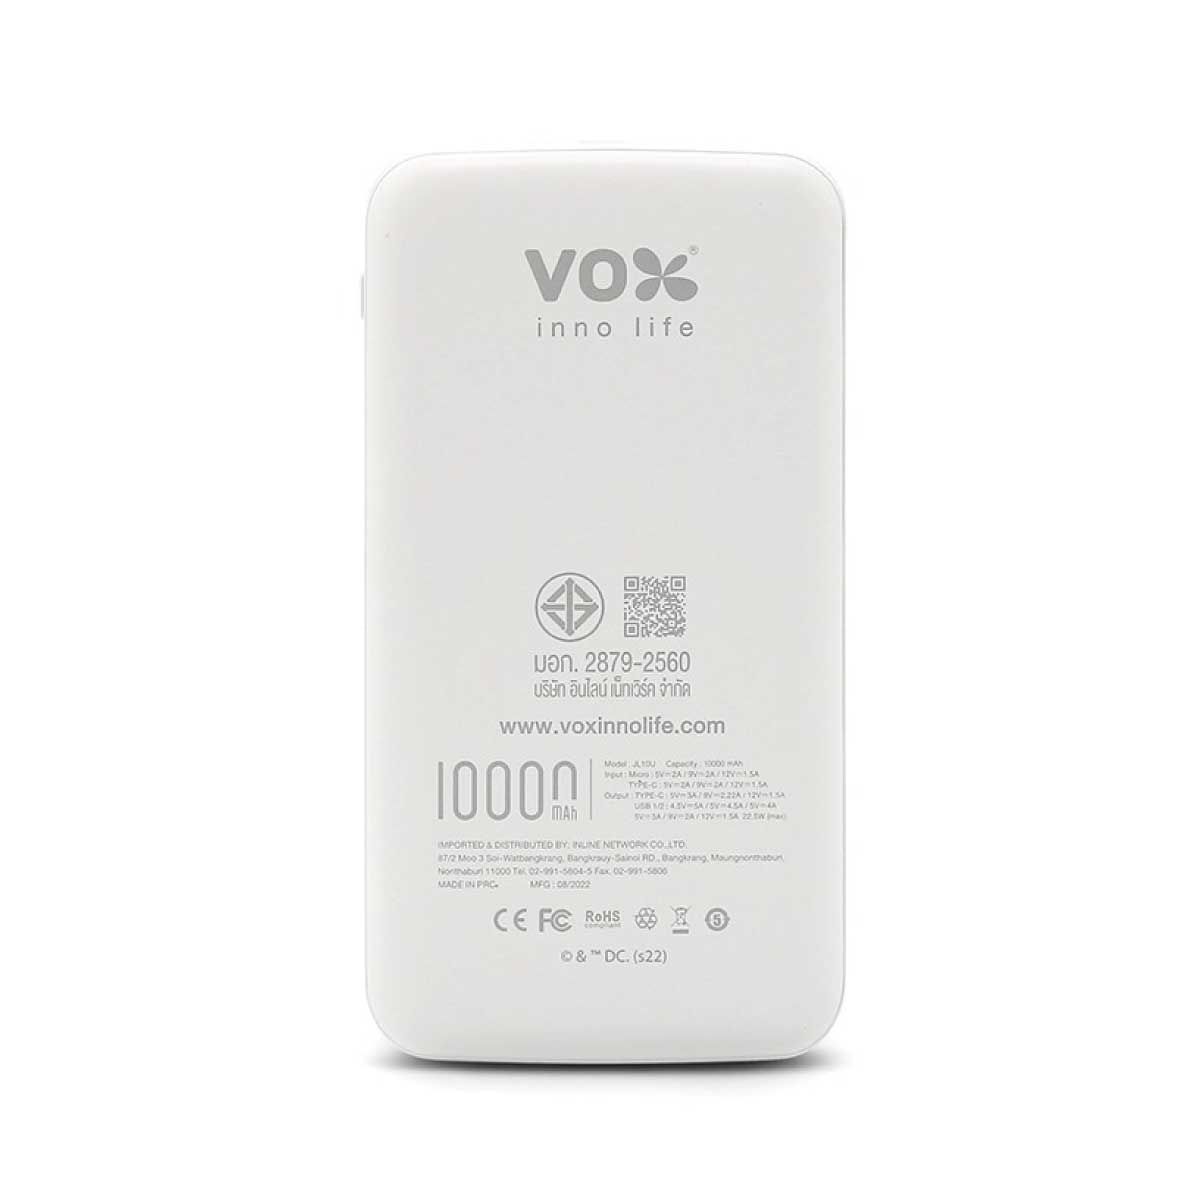 VOX แบตเตอรี่สำรอง 10000 mAh วันเดอร์วูแมน แบบ 2 สีขาว